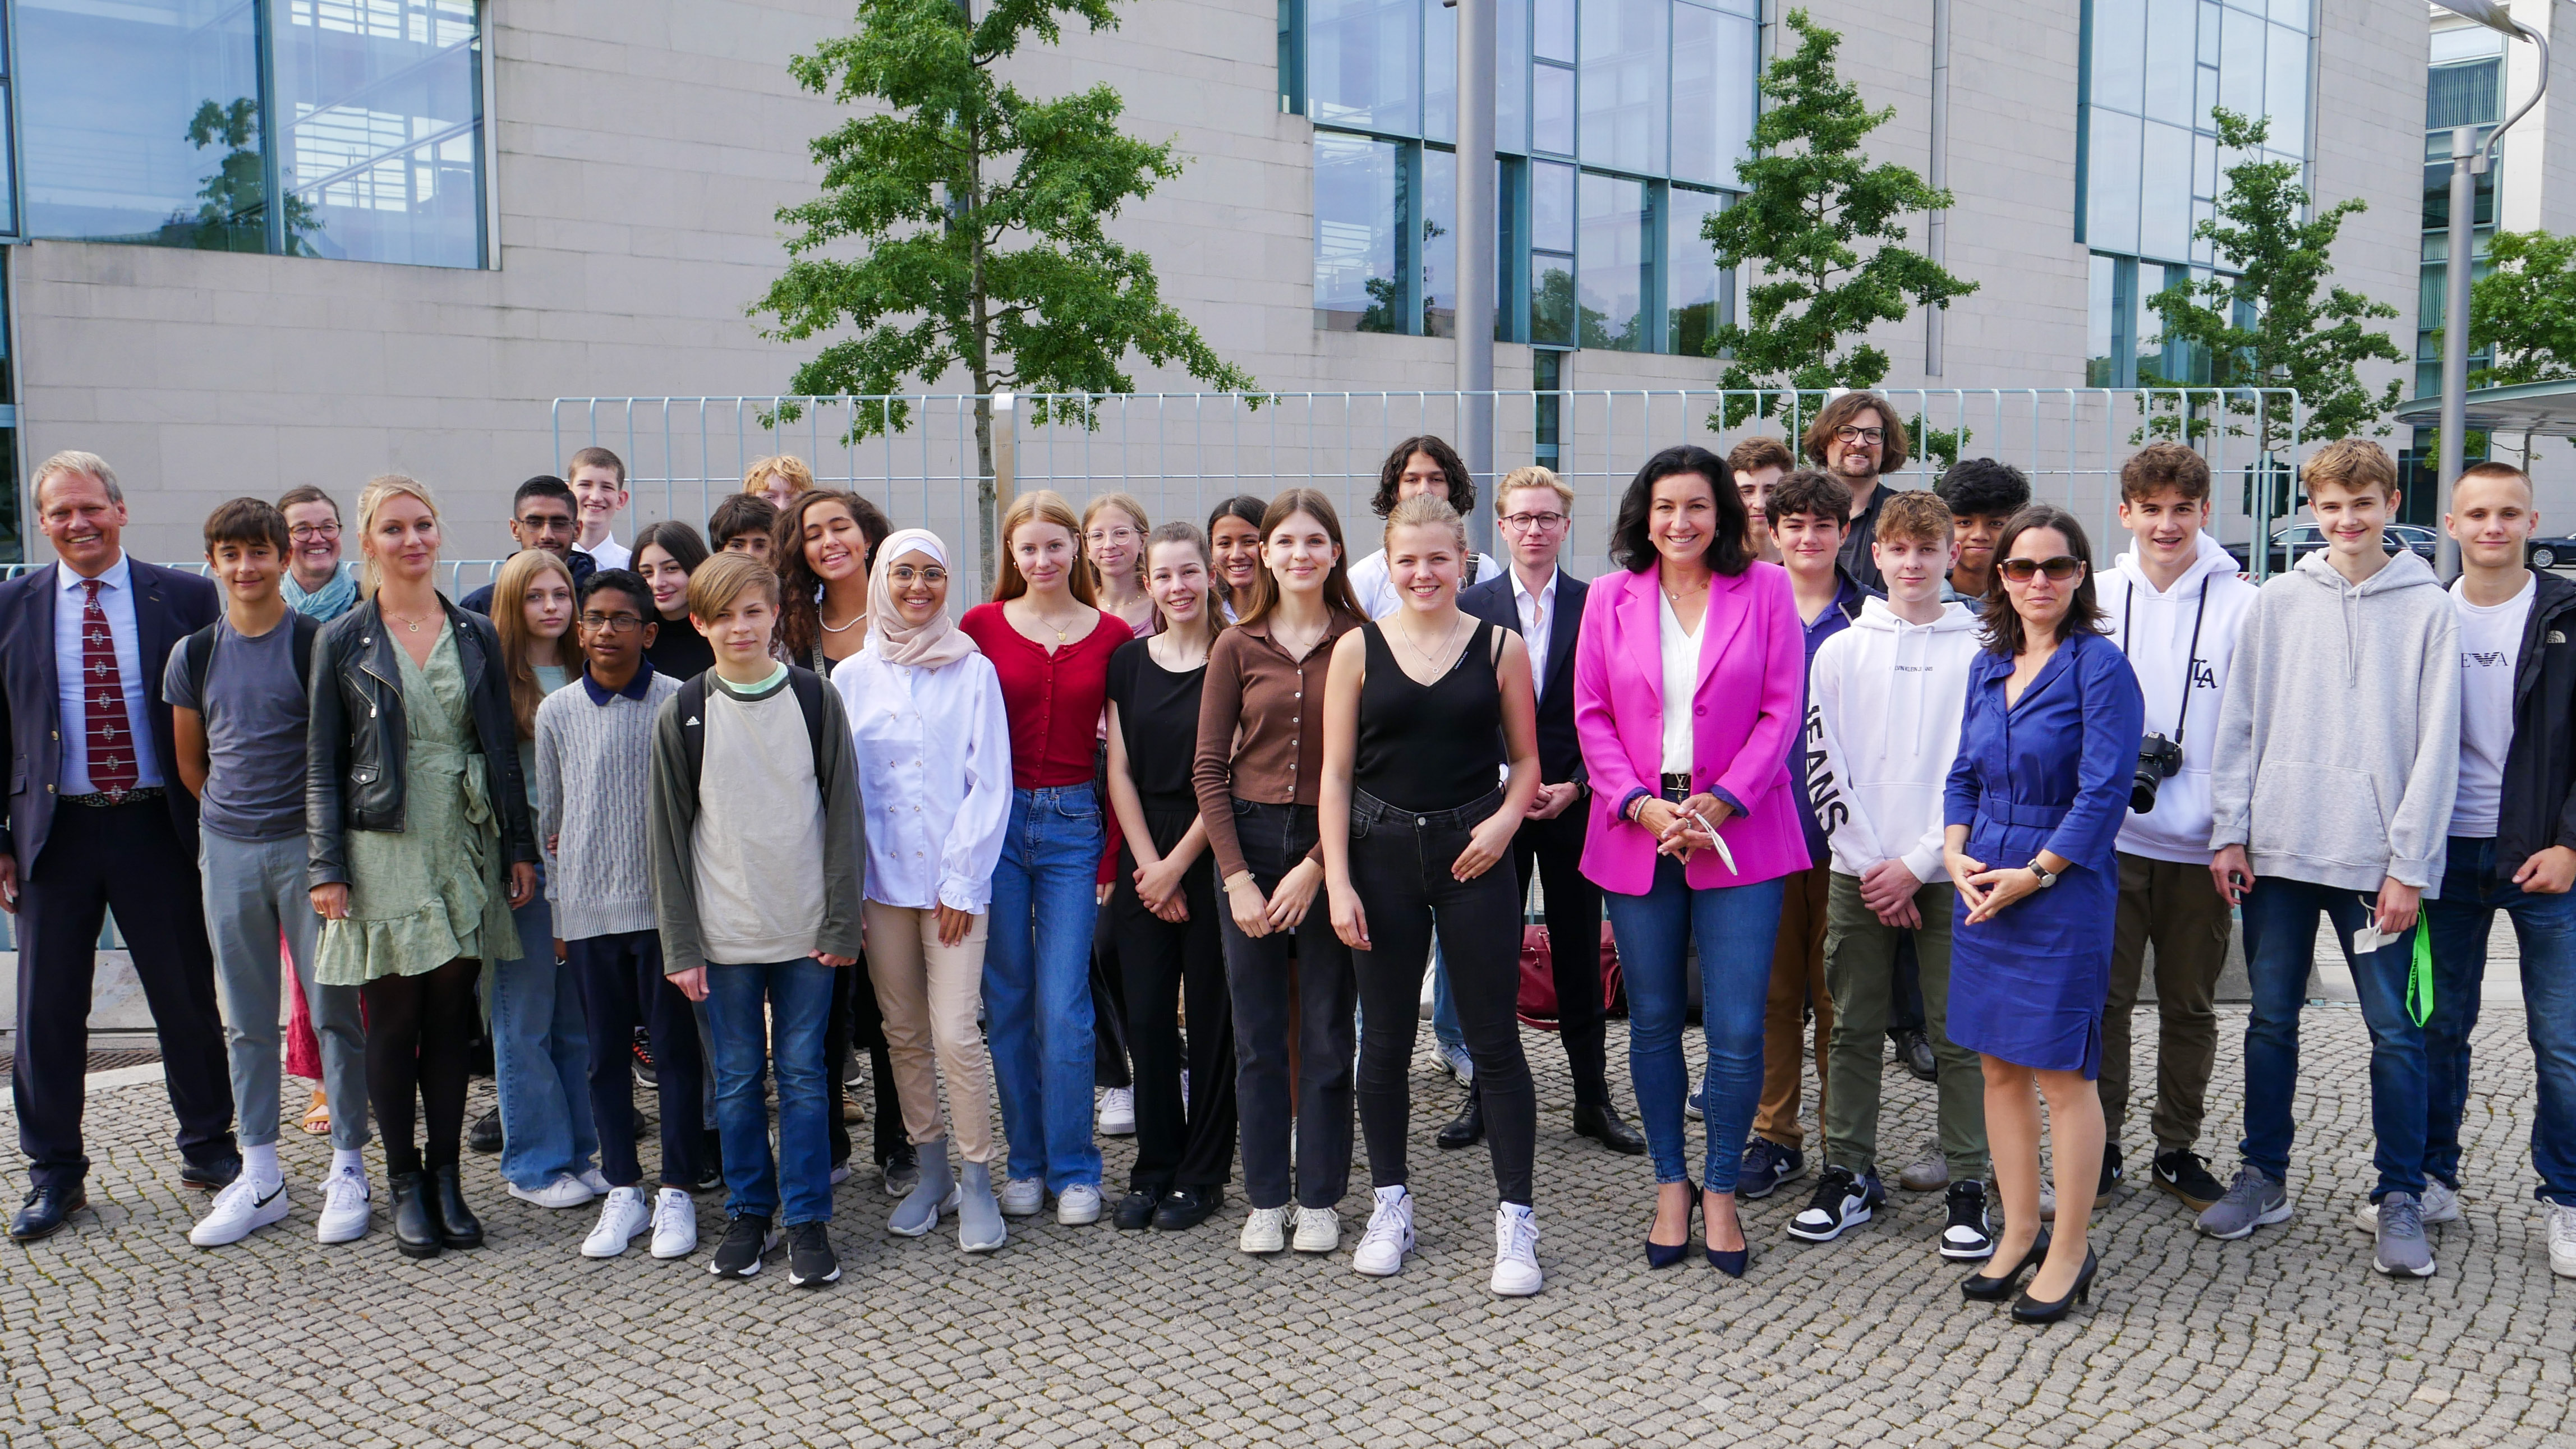 Die achte Klasse des Goethe-Gymnasiums in Frankfurt am Main mit myDigitalWorld mit Wettbewerbspatin und Ministerin für Digitales, Dorothee Bär